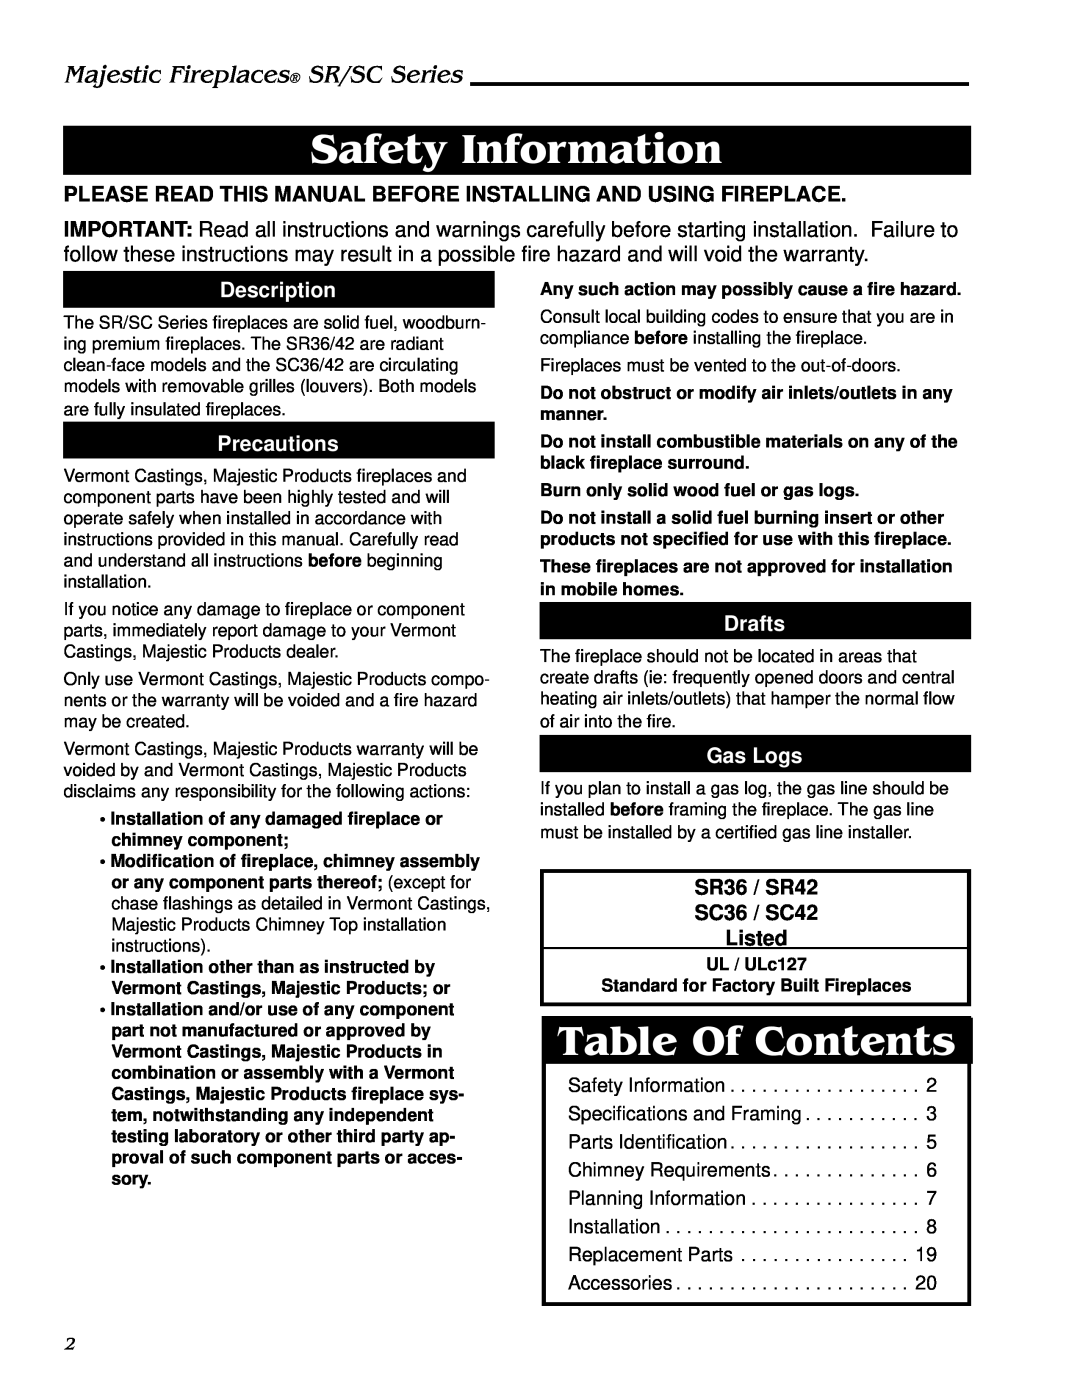 Vermont Casting SC42, SR42, SR36, SC36 Safety Information, Table Of Contents, Description, Precautions, Drafts, Gas Logs 